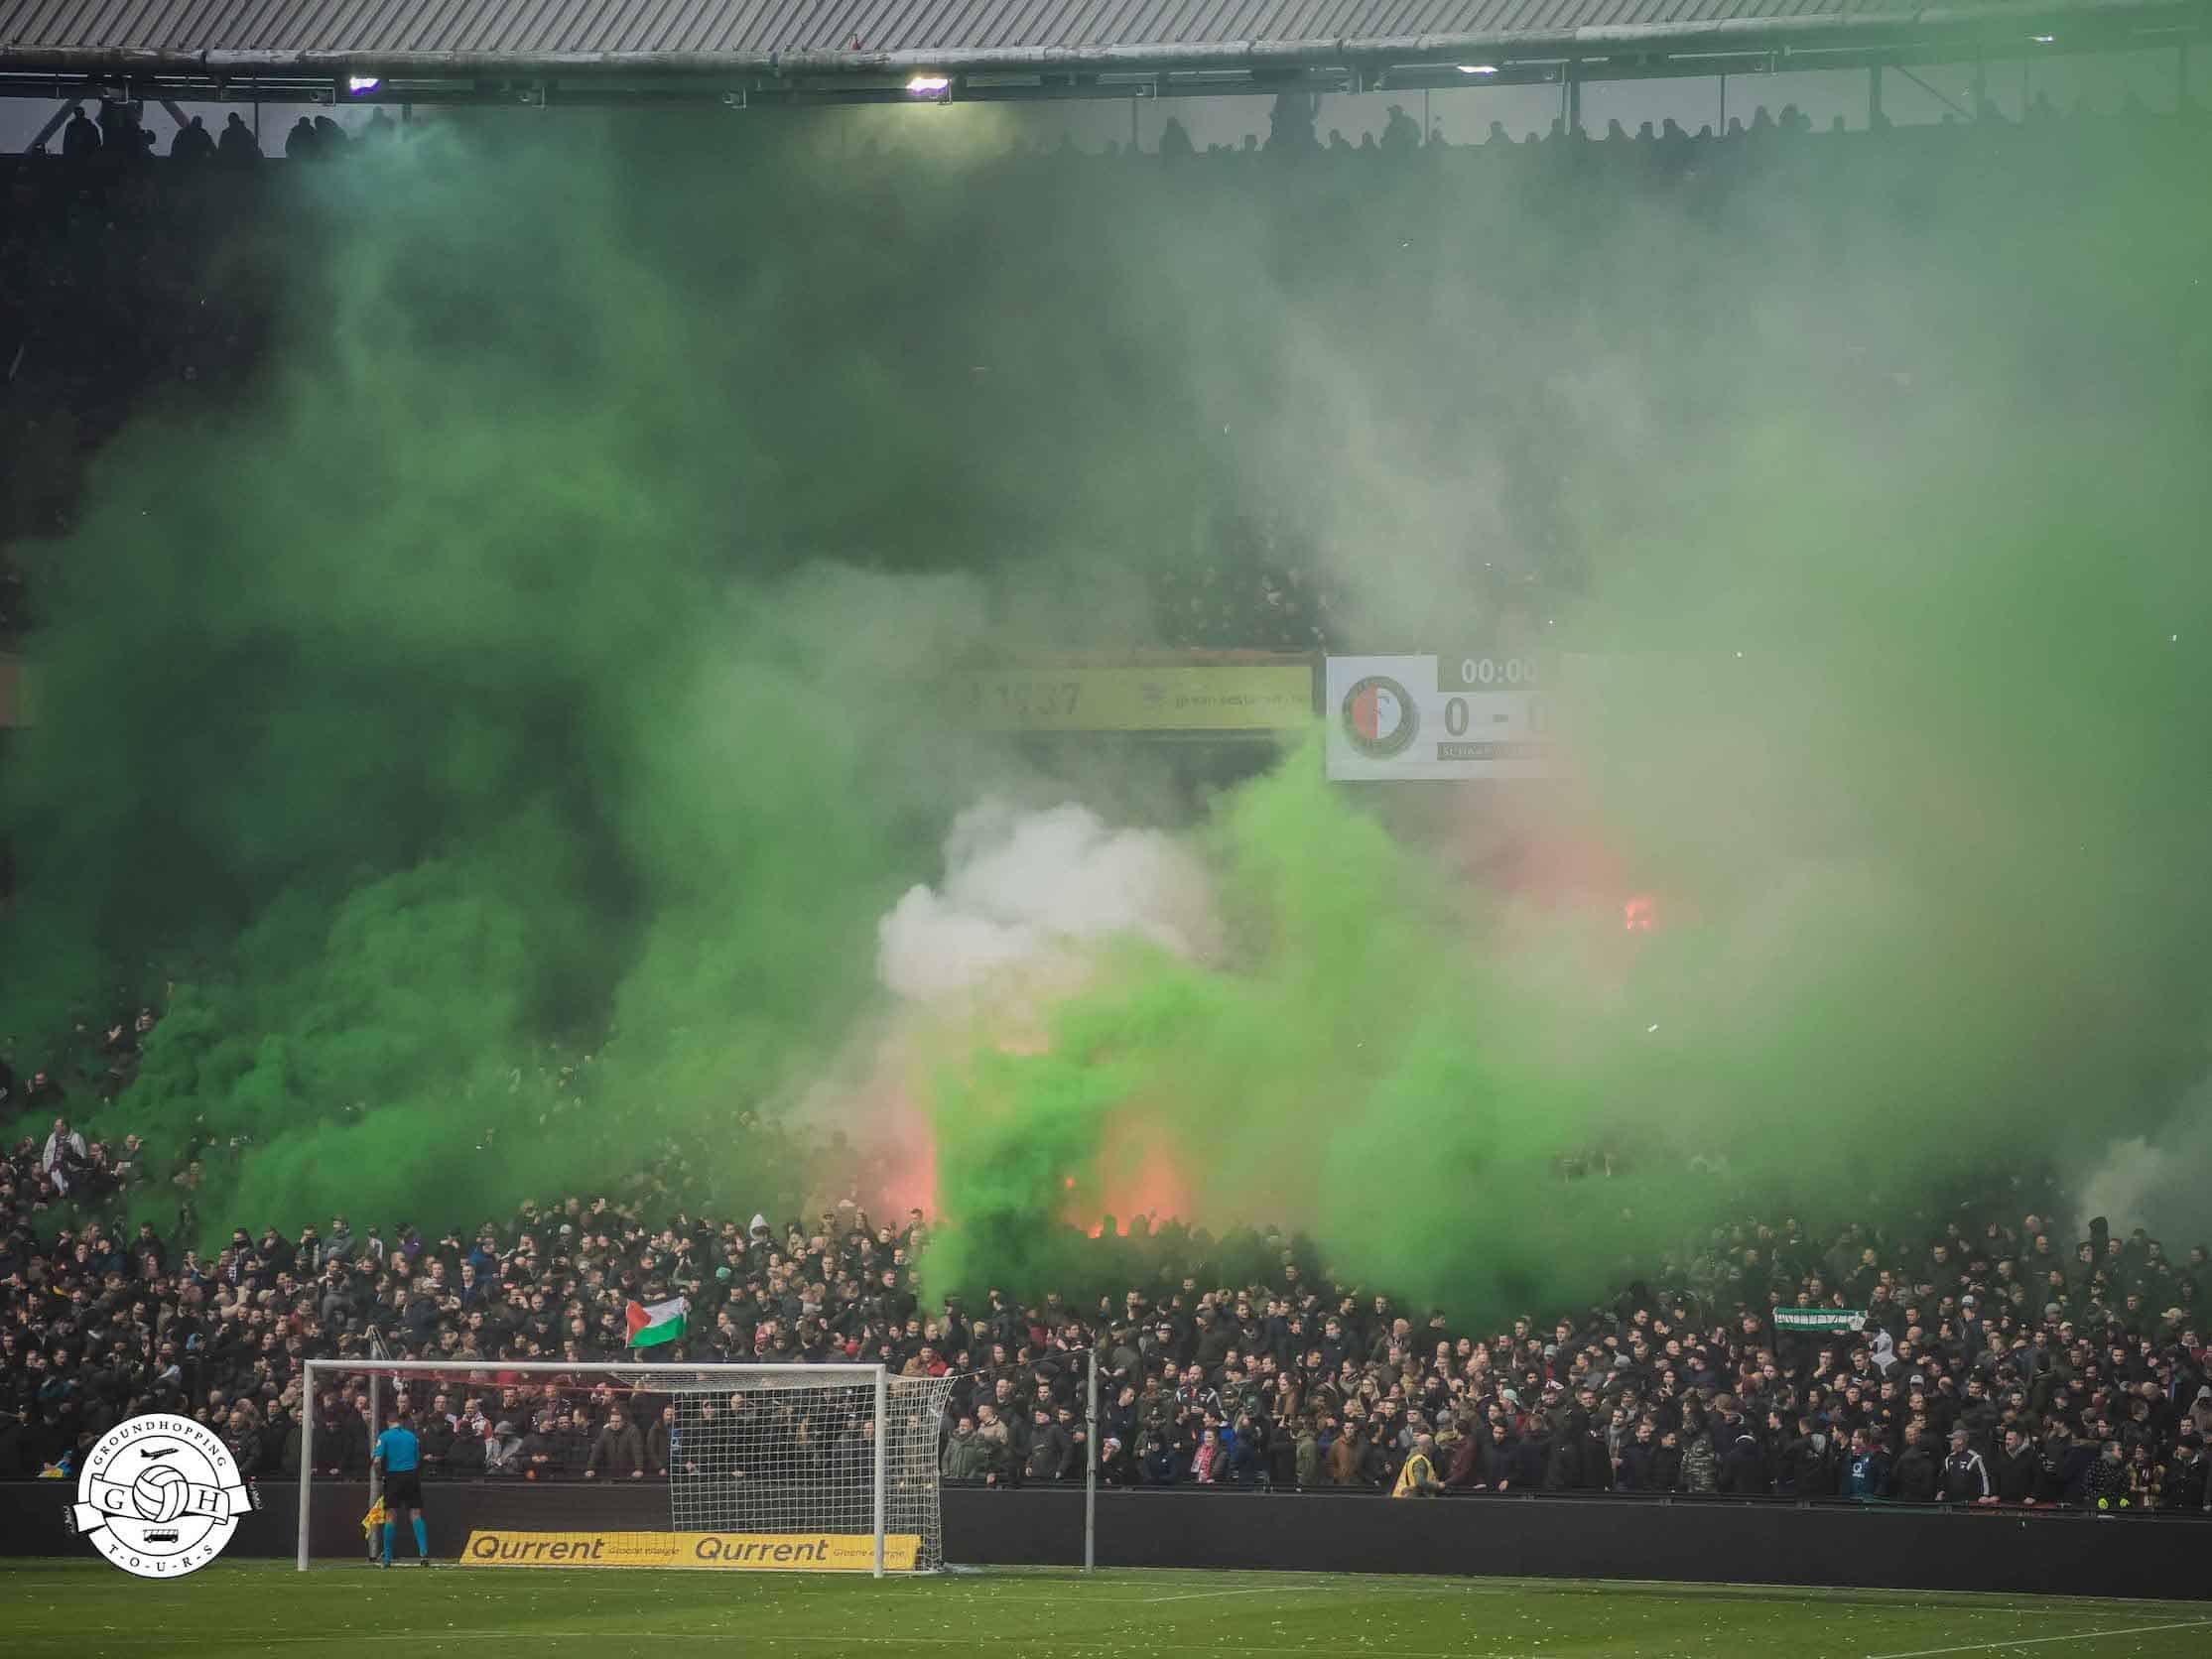 De Klassieker - Feyenoord vs. Ajax 2